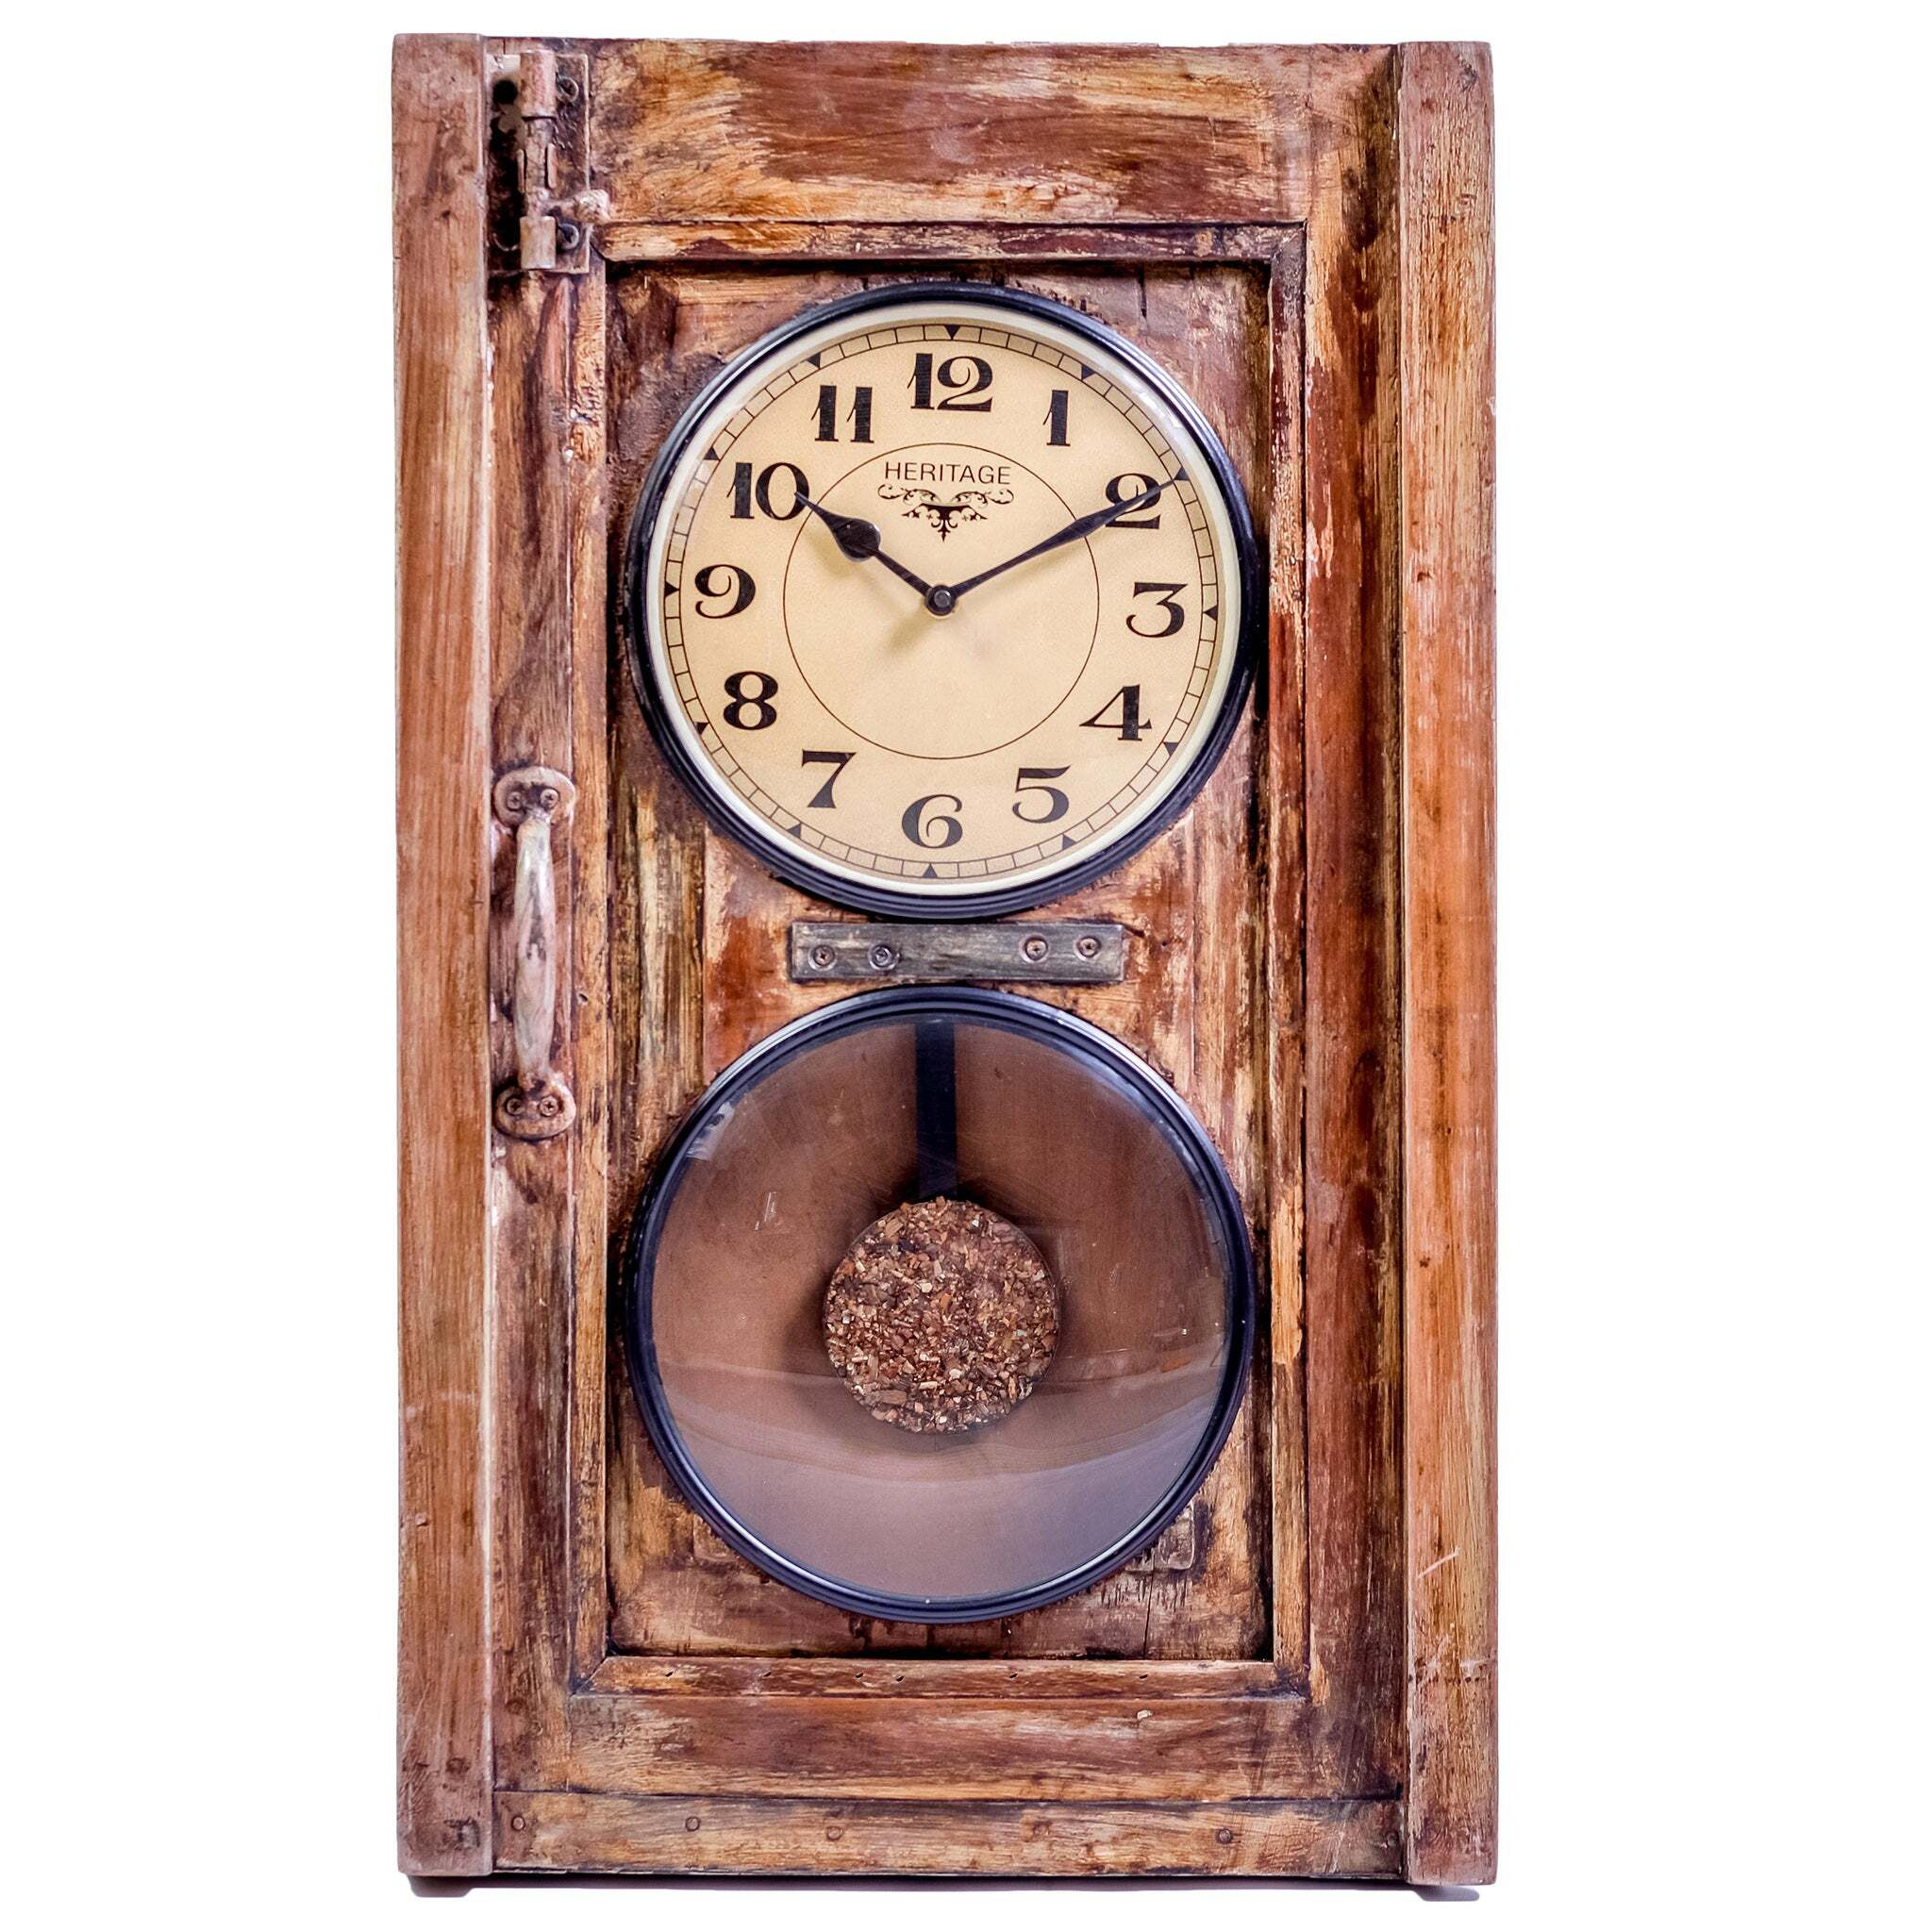 Stylish Upcycled Old Window Pendulum Wall Clock - image 1